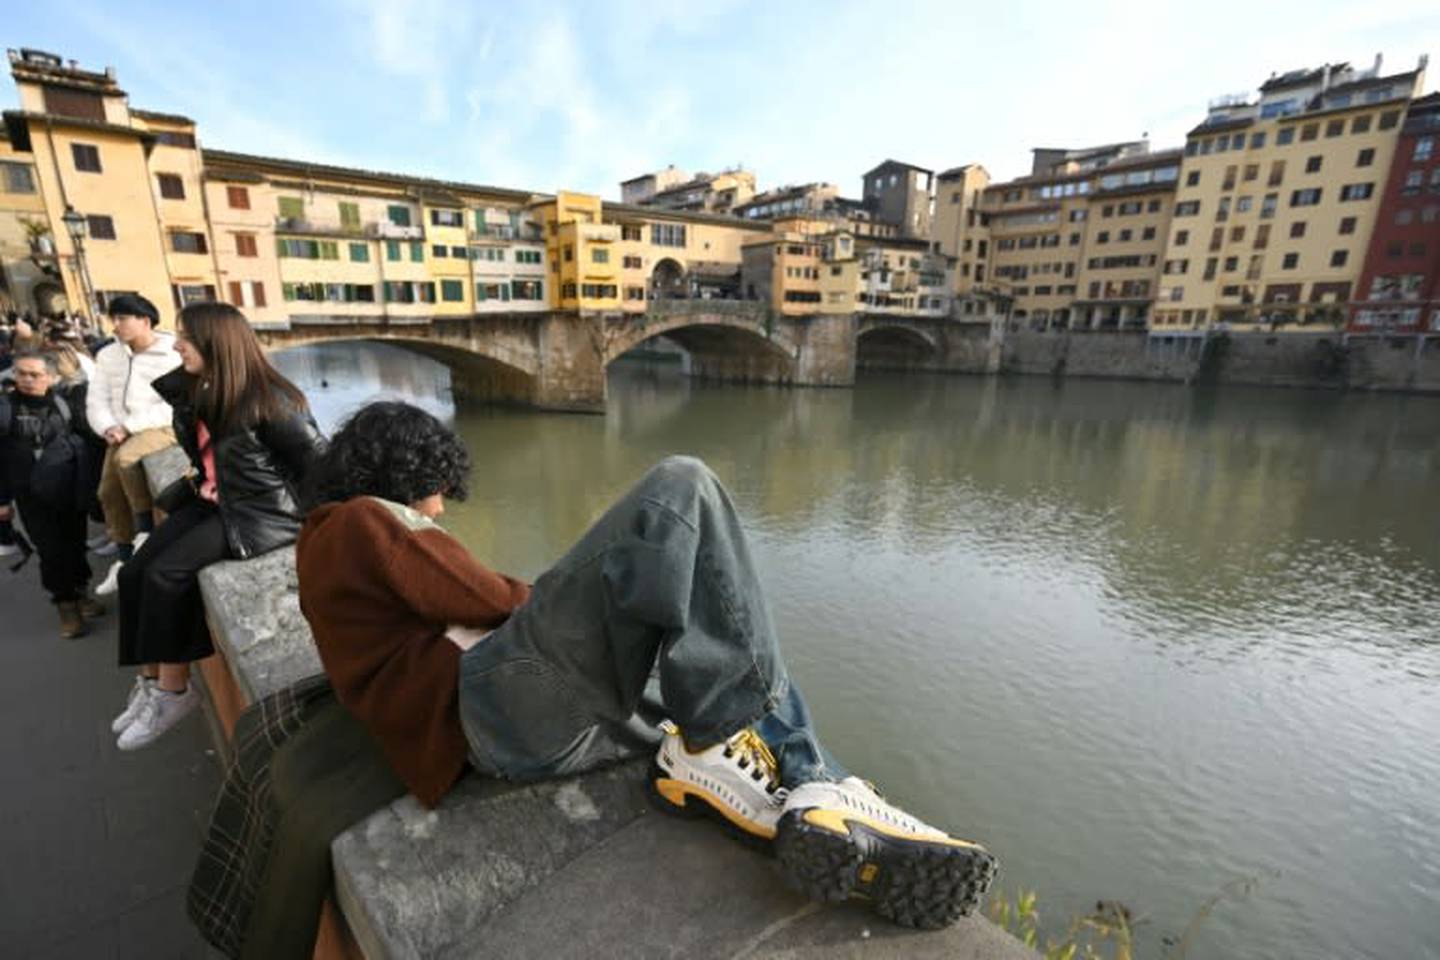 El centro de Florencia recibe más turistas que hace unos años y esto obliga a tener más opciones de hospedaje. Negocios tradicionales han dado paso a cadenas hoteleras y apartamentos de alquiler.

Fotografía: Alberto Pizzoli / AFP